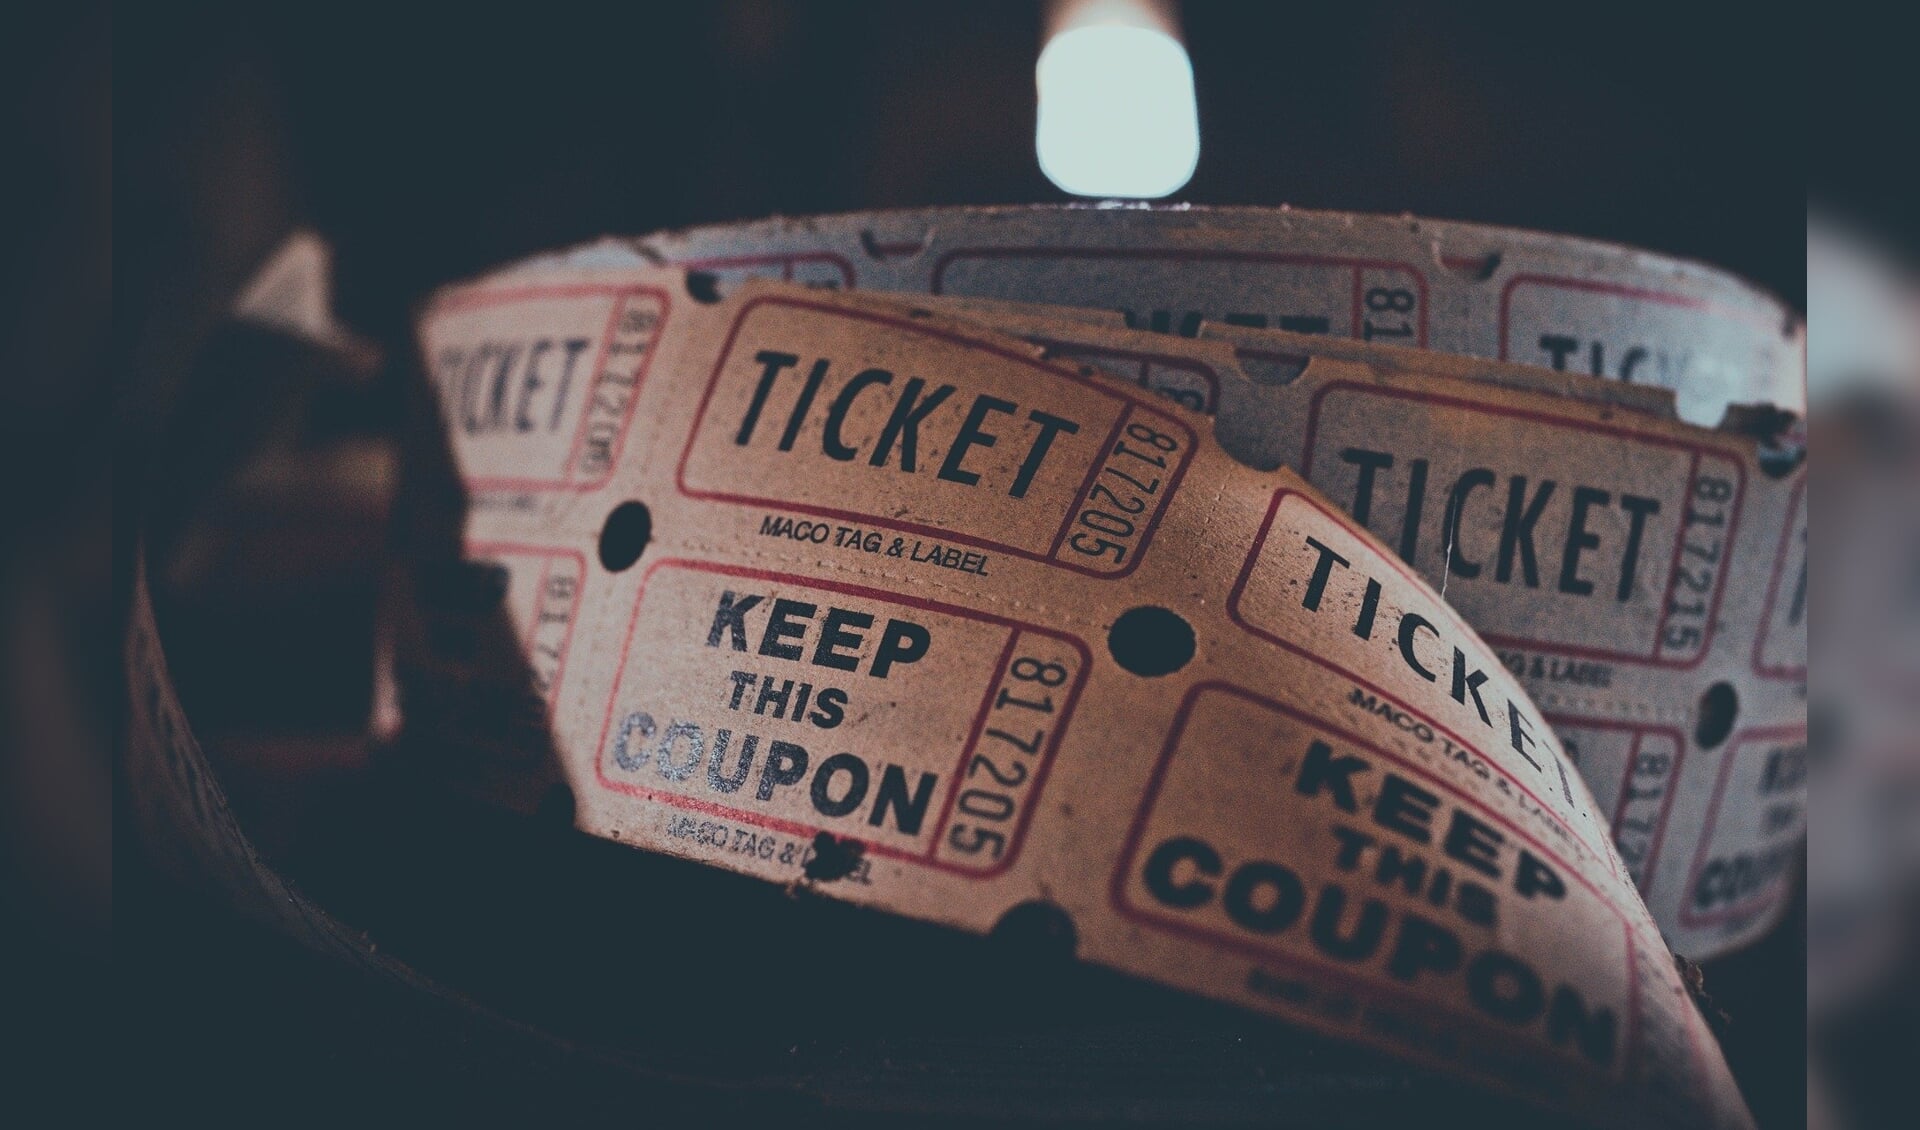 Tickets. 